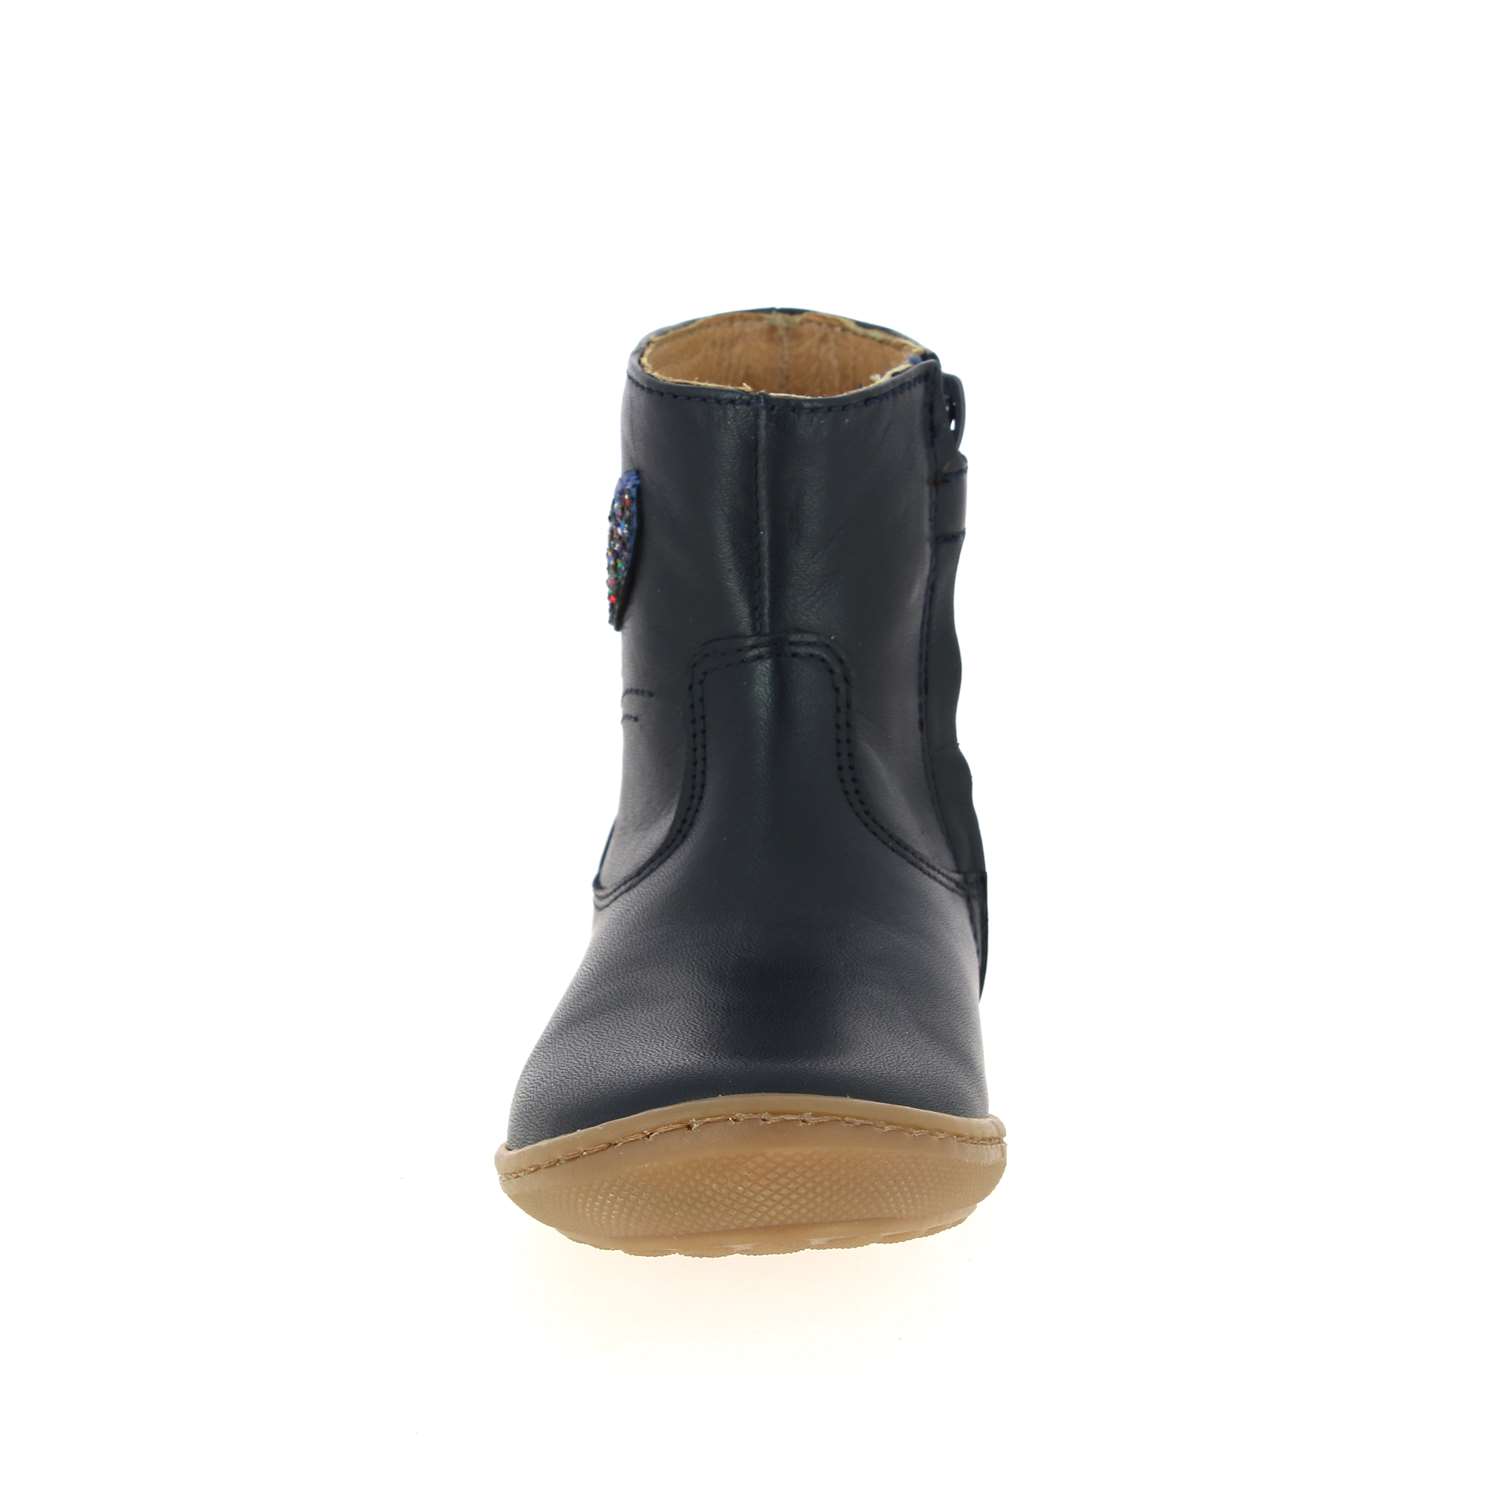 03 - LAPINOU - ROMAGNOLI - Boots et bottines - Cuir